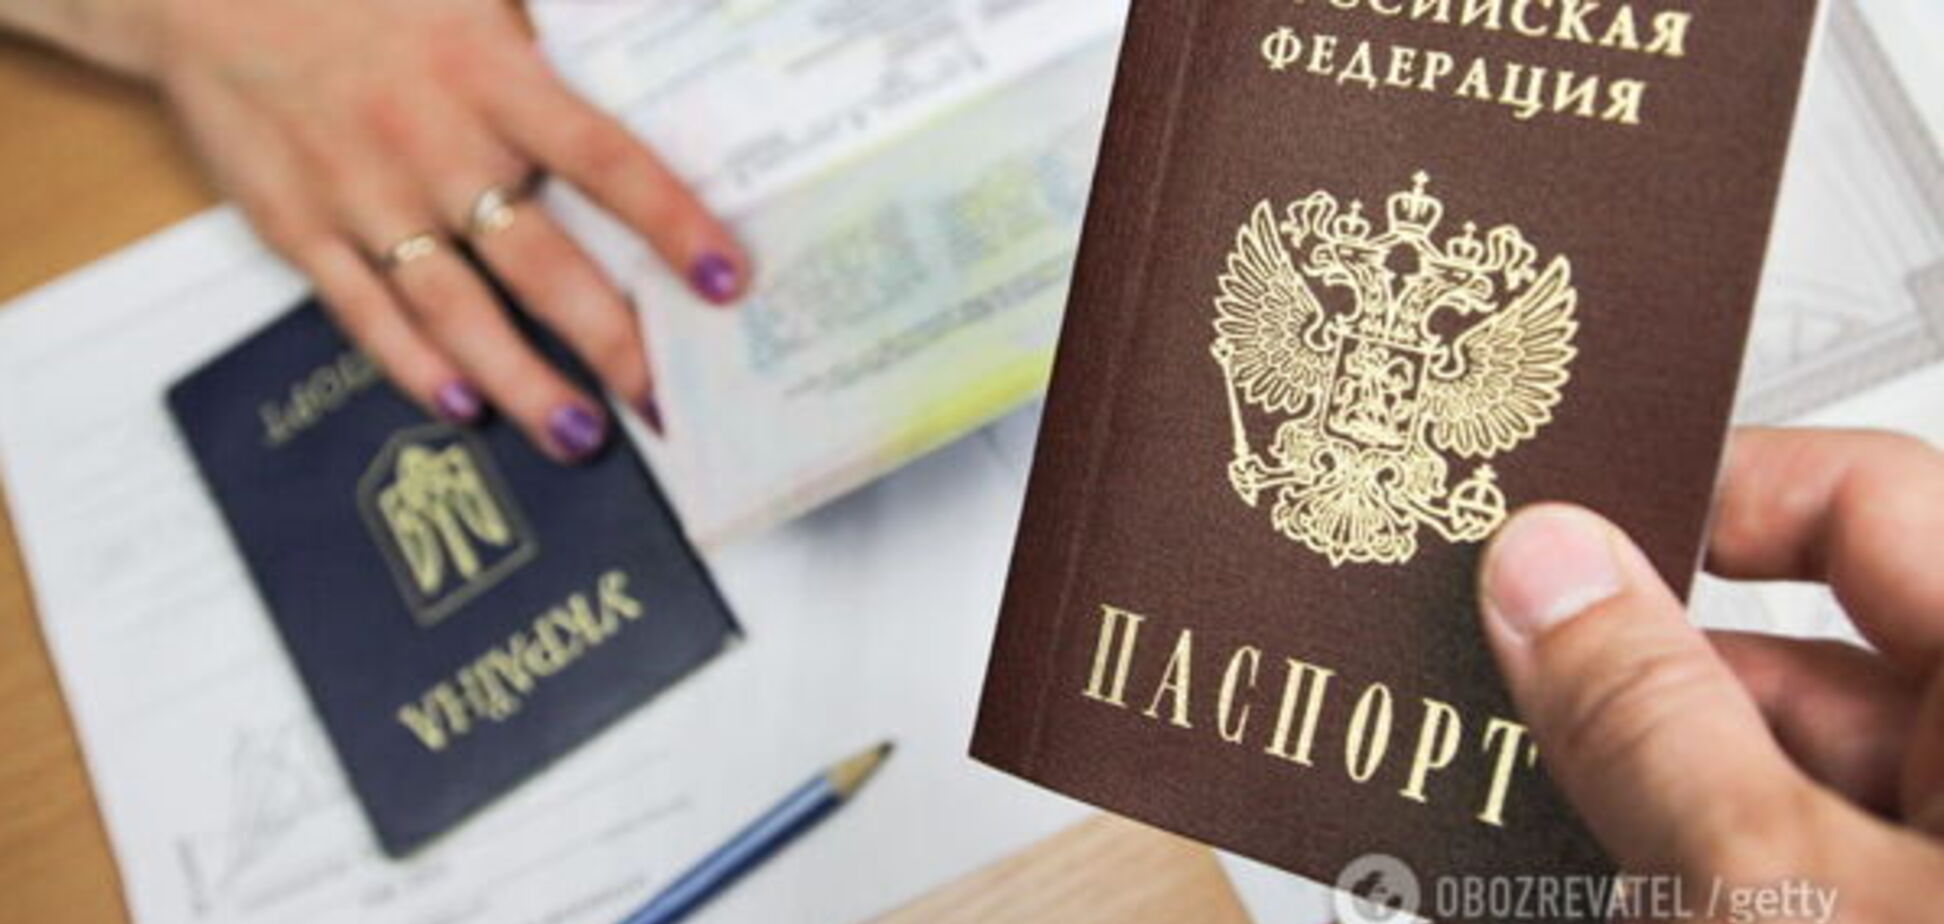 'Срочно привлечь к работе!' Соловьев раскрыл настоящую причину паспортов РФ для Донбасса